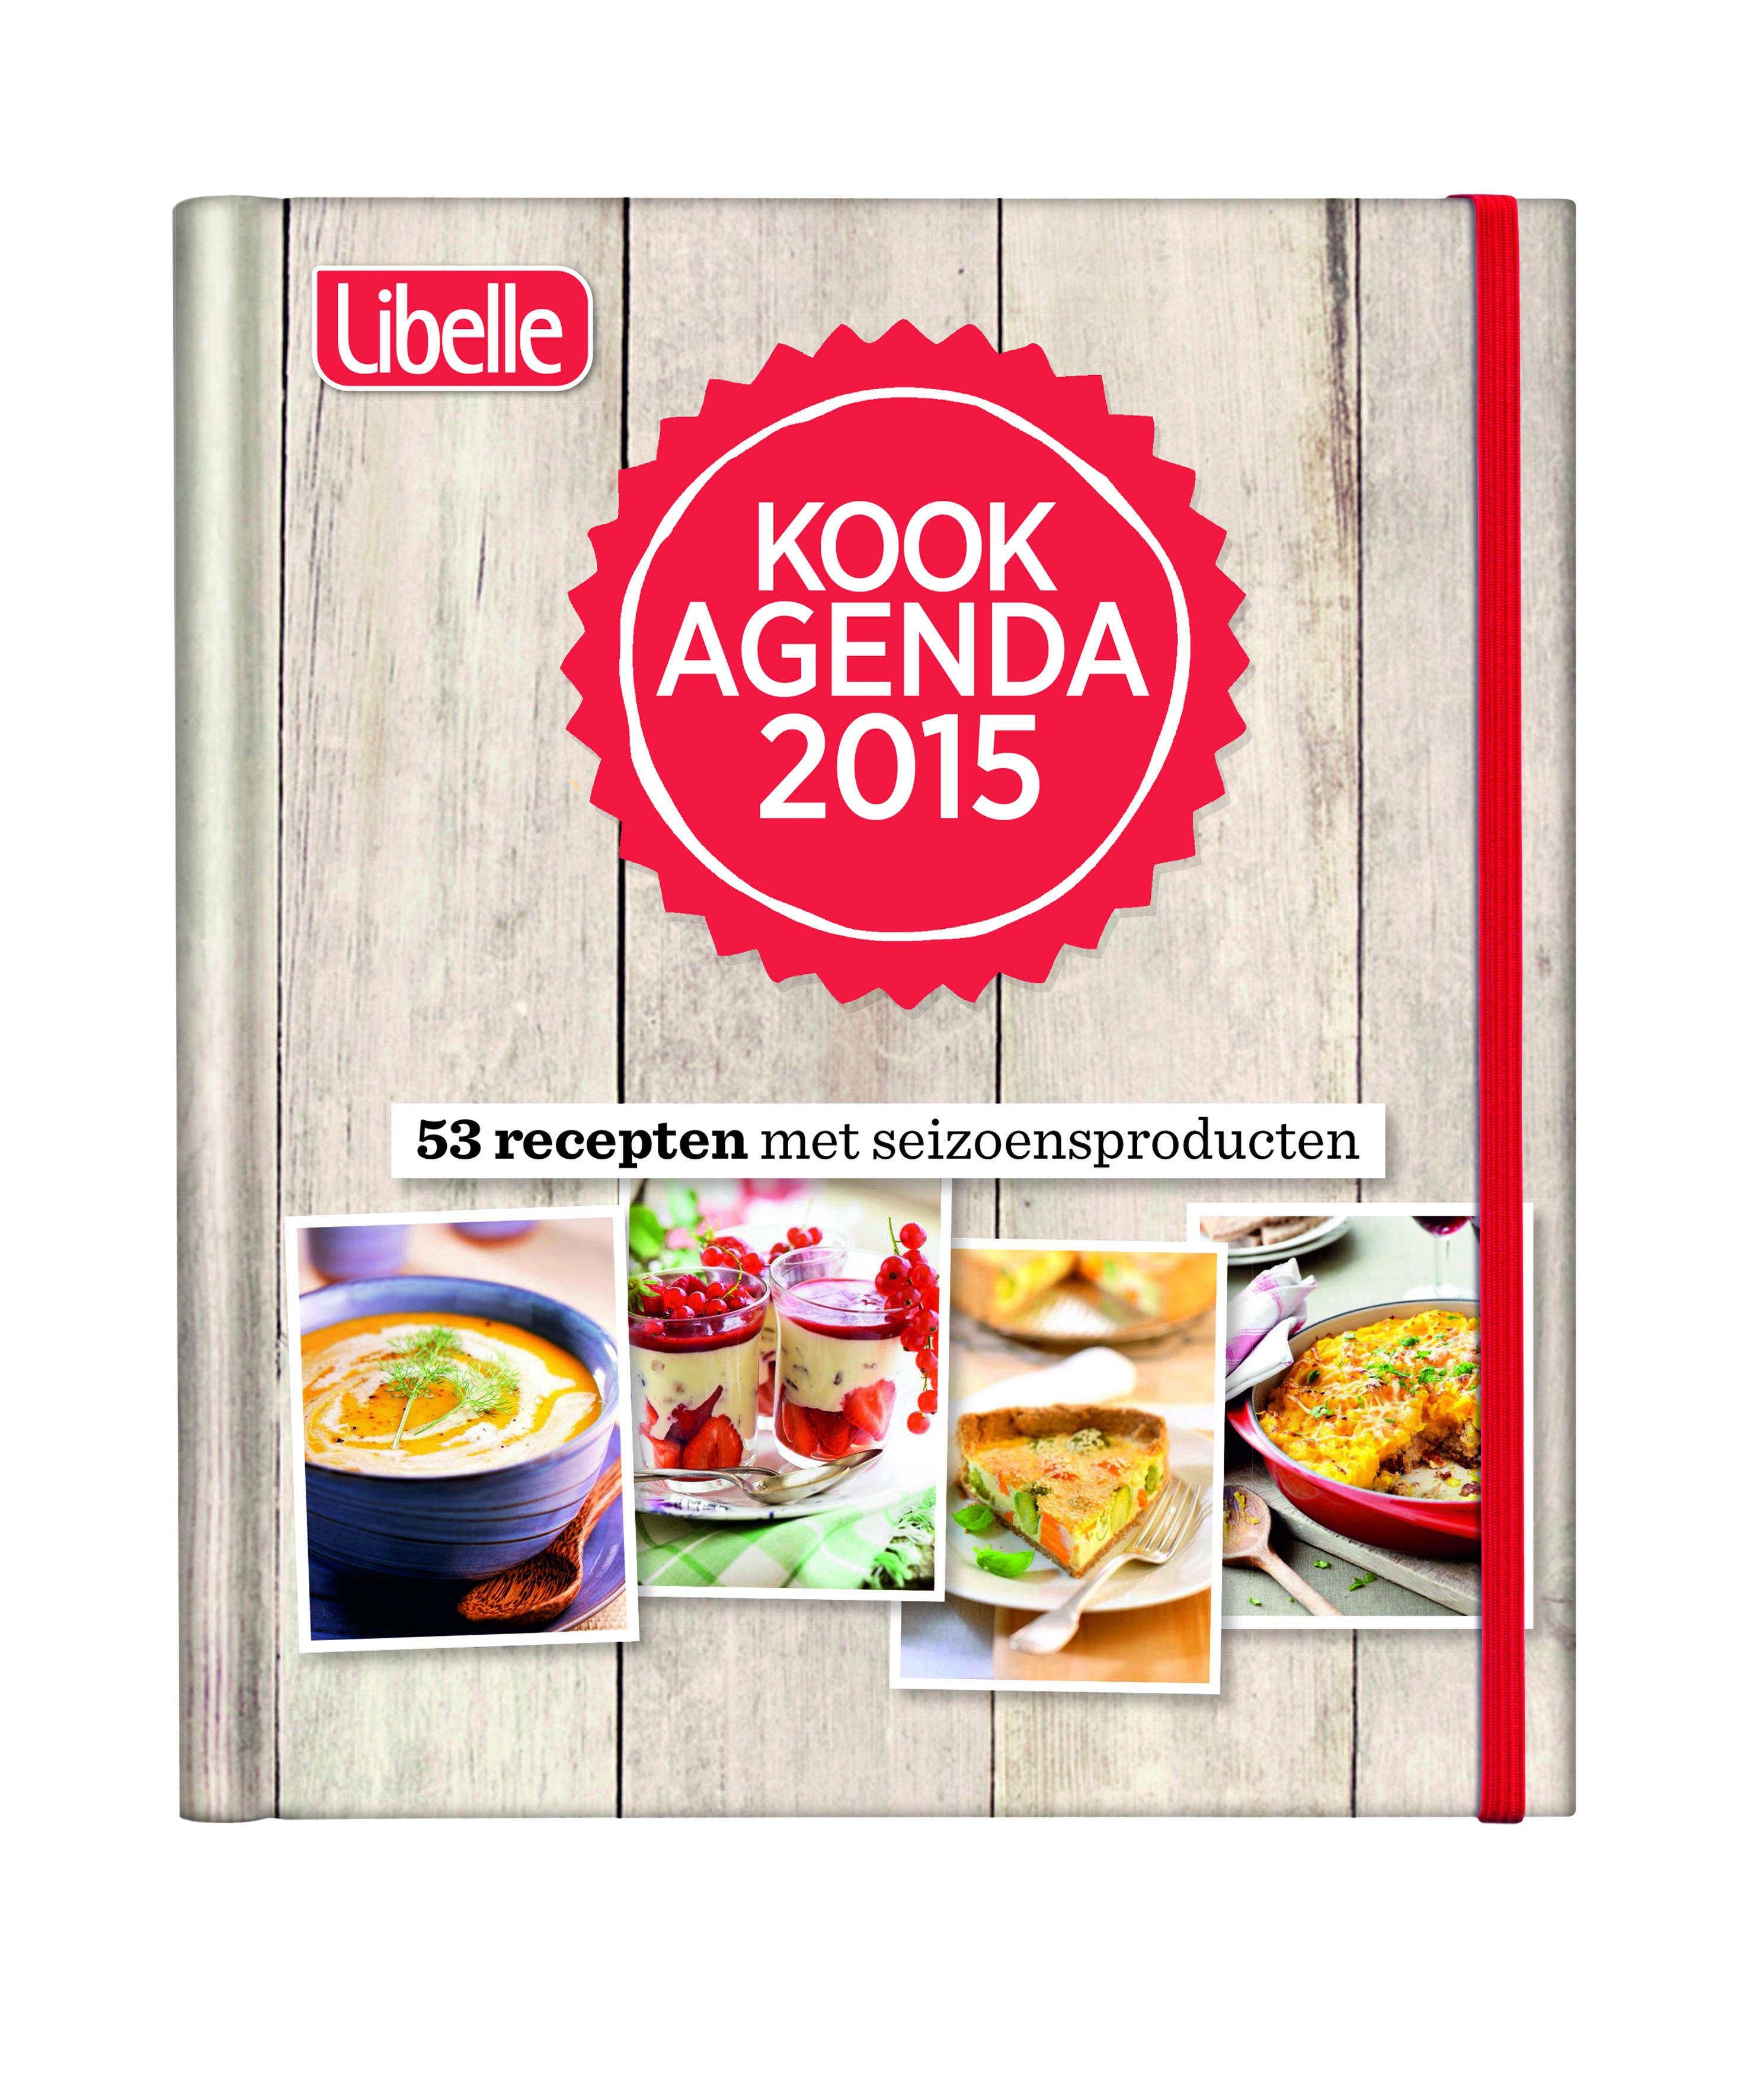 libelle_kook_agenda_2015_volume.jpg FR